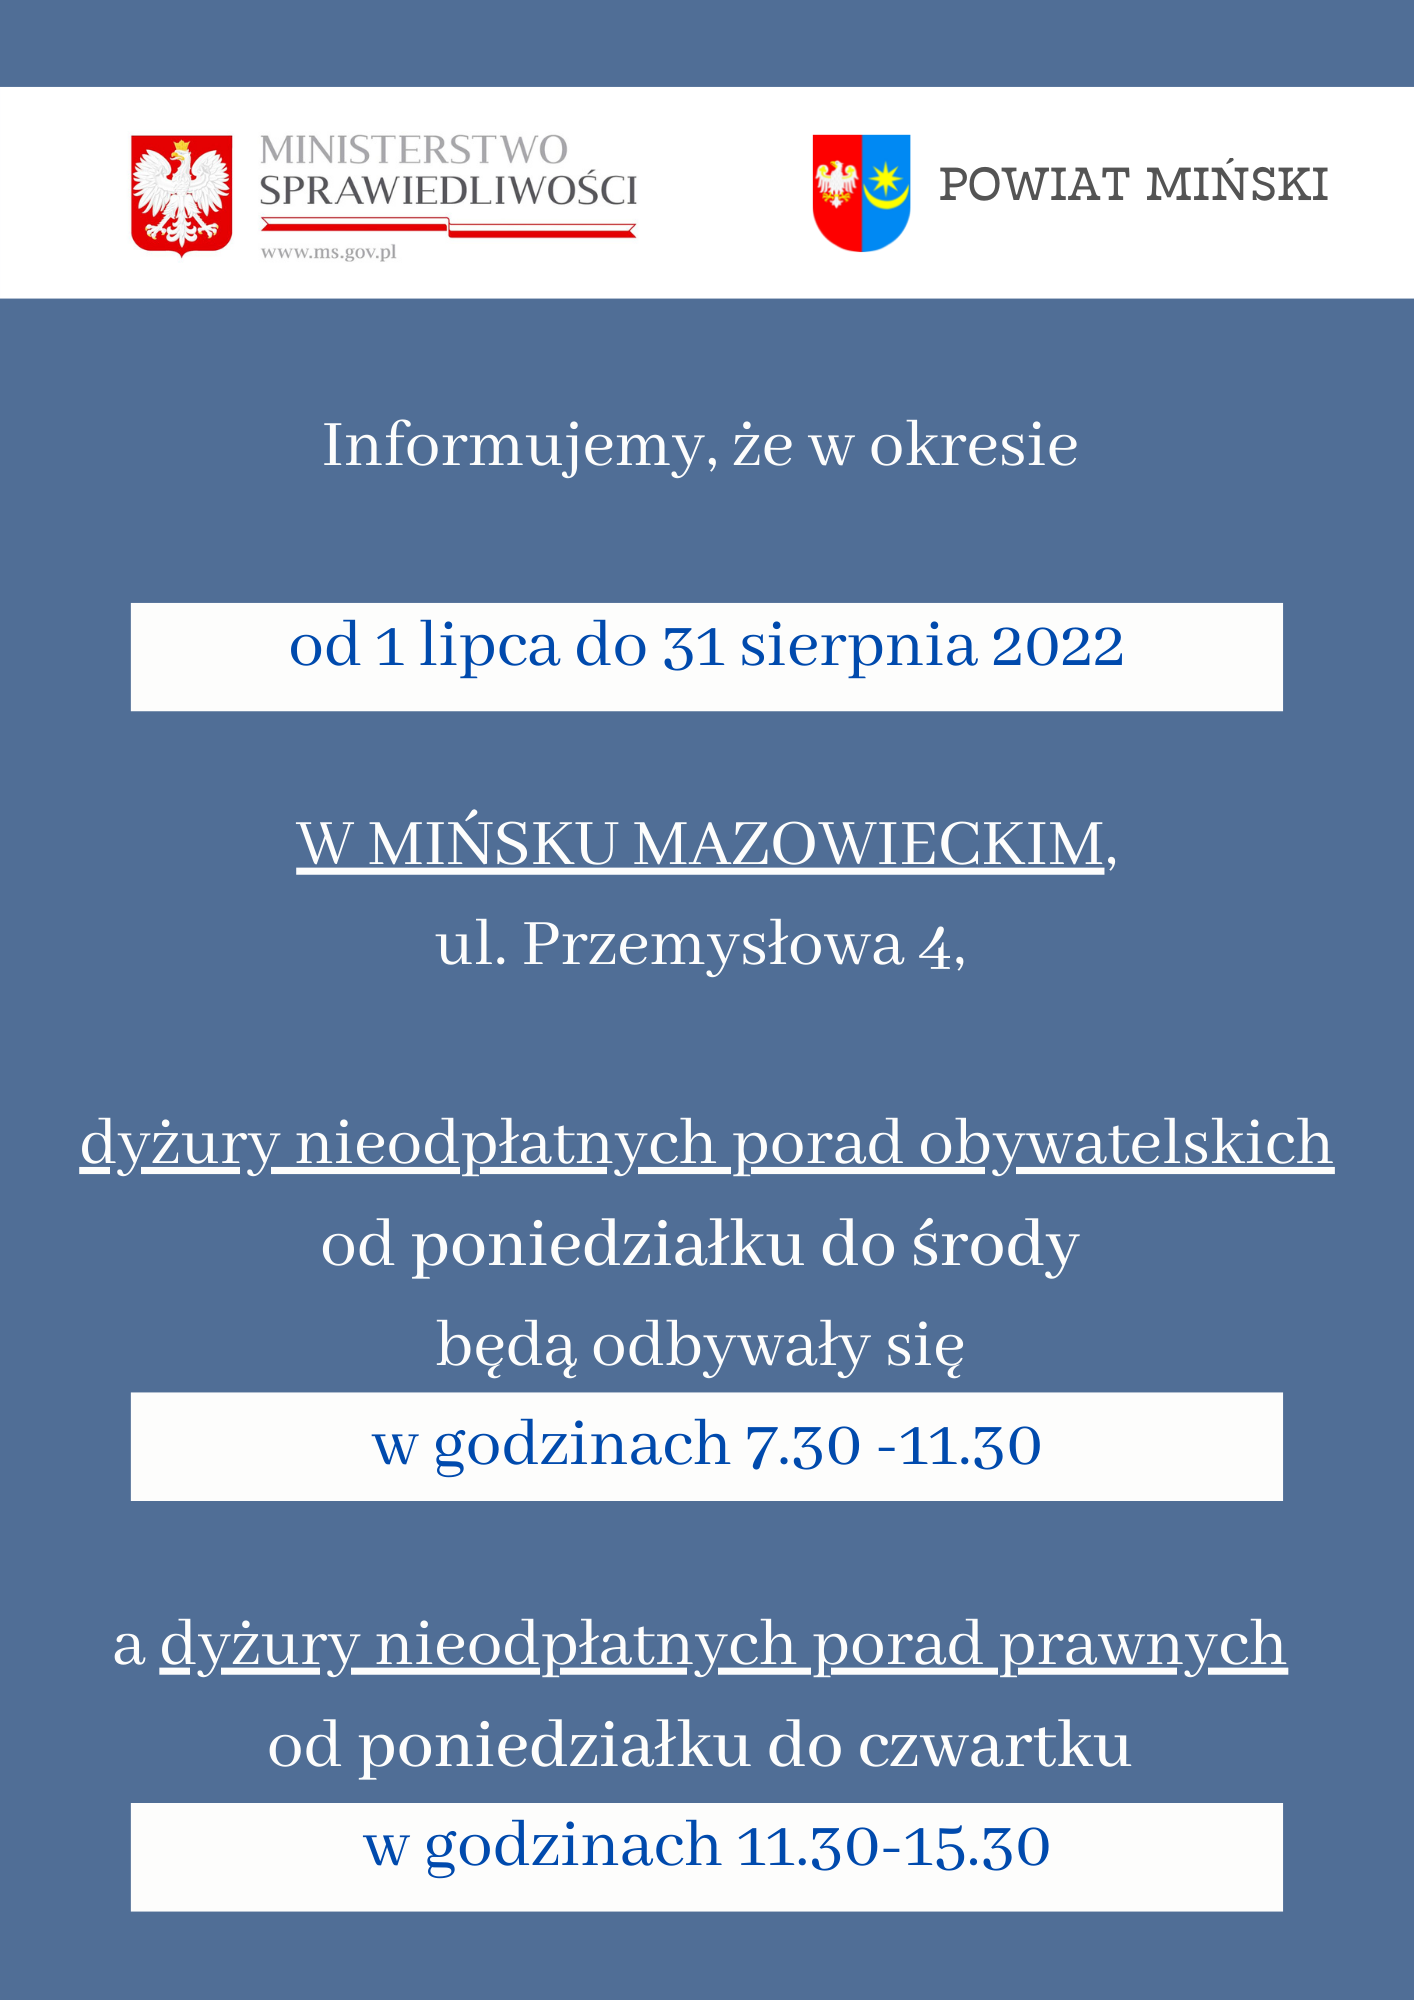 Obrazek jest banerem prowadzącym do pliku pdf z informacją o godzinach pracy punktu w Mińsku Mazowieckim